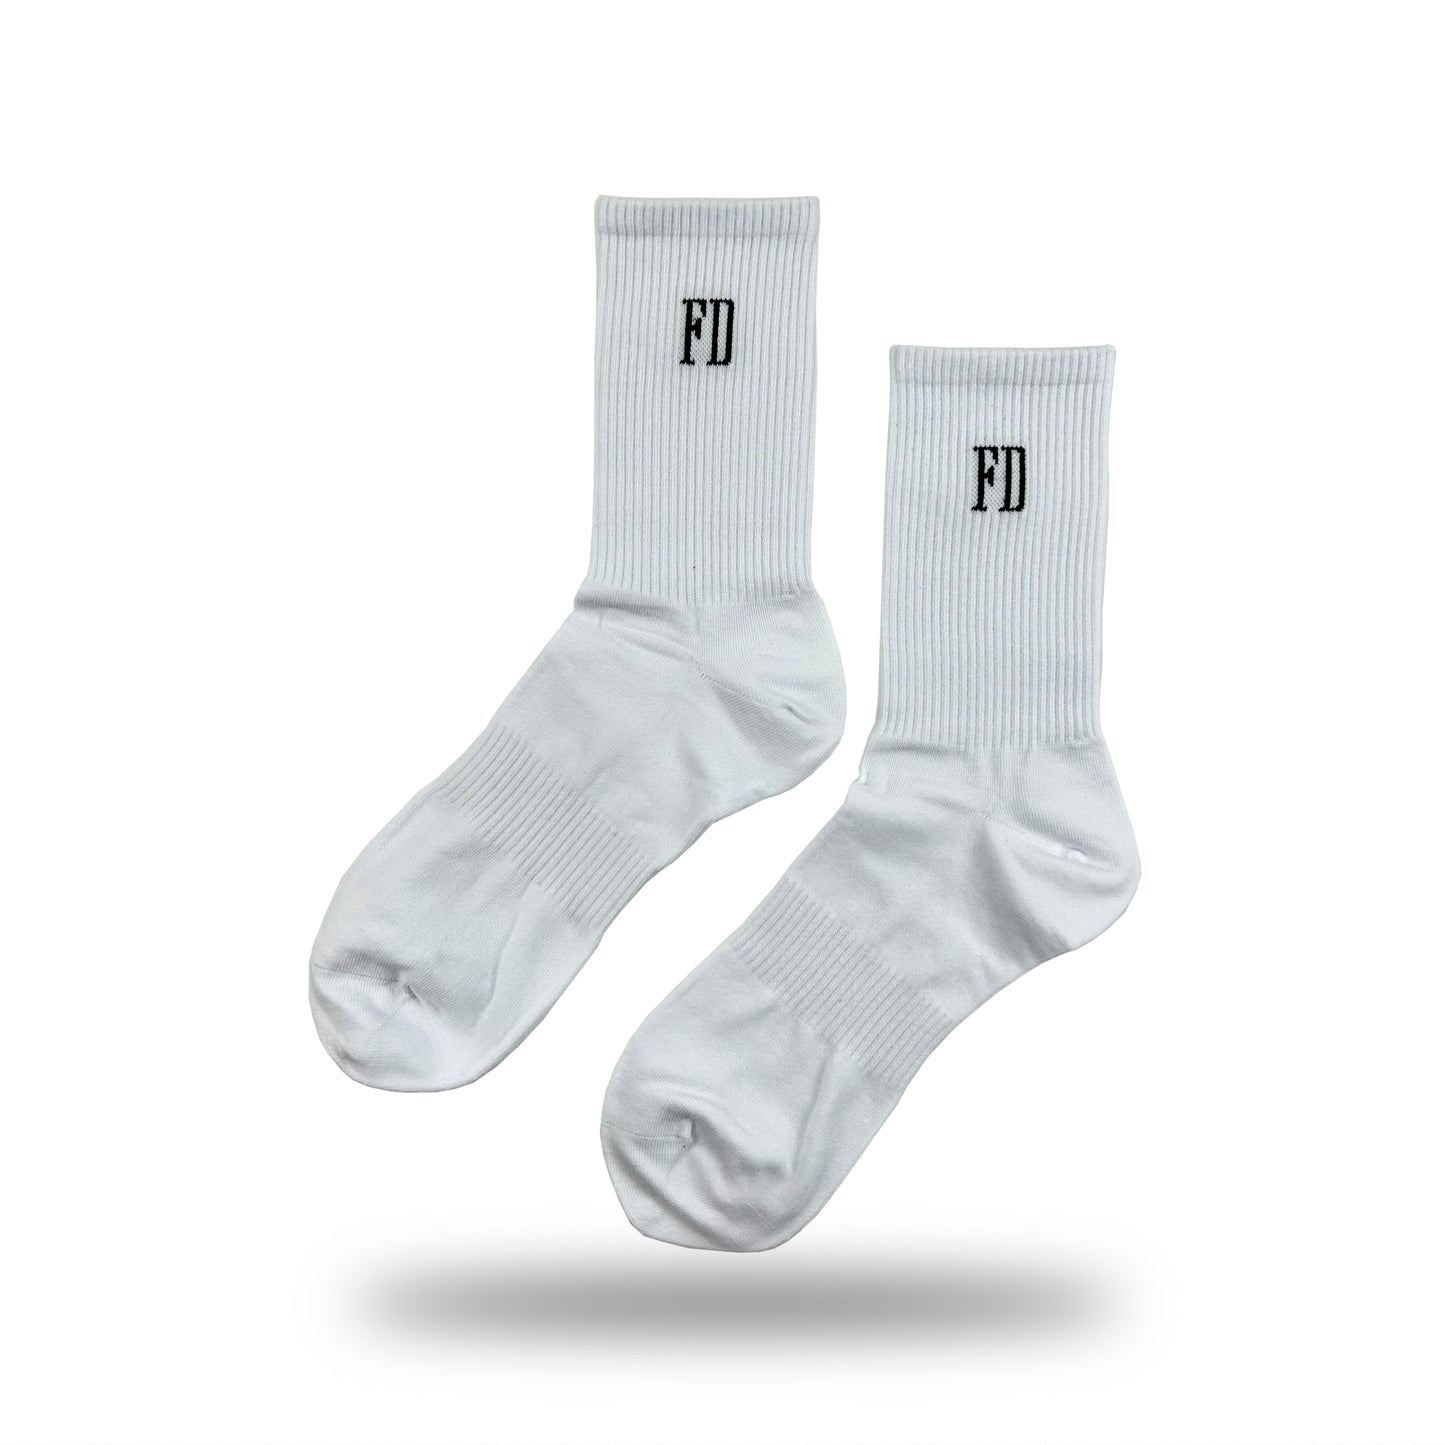 FD Socks - White